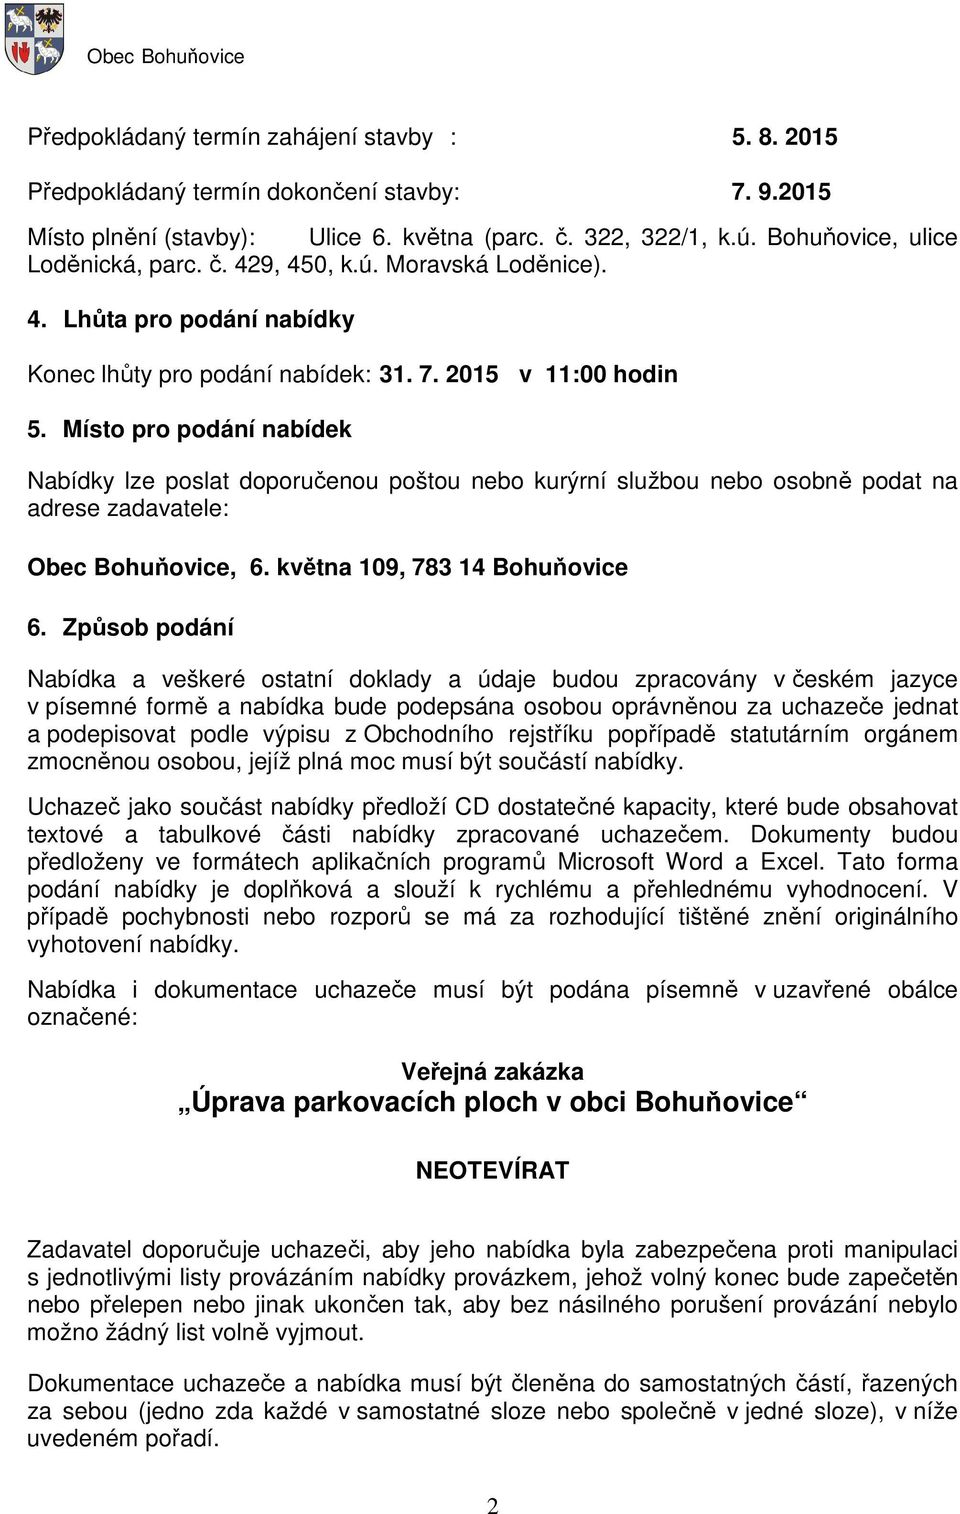 Místo pro podání nabídek Nabídky lze poslat doporučenou poštou nebo kurýrní službou nebo osobně podat na adrese zadavatele: Obec Bohuňovice, 6. května 109, 783 14 Bohuňovice 6.